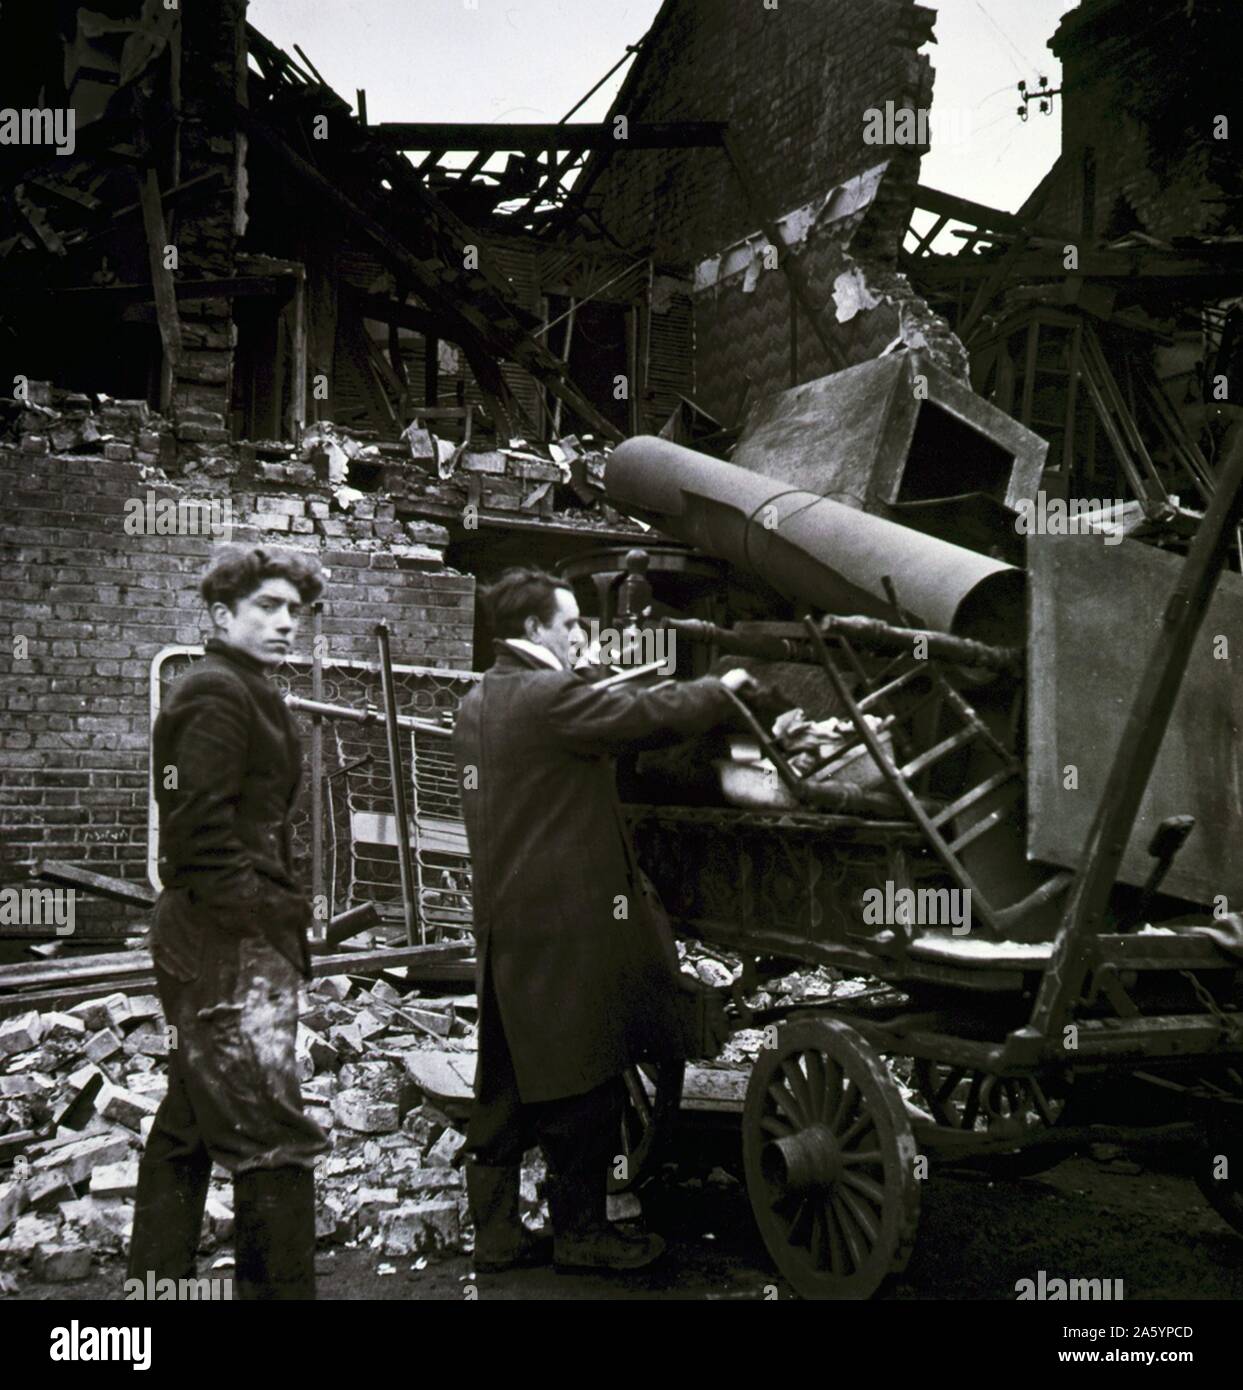 Foto von zwei Männern laden ihr Hab und gut nach dem Battersea Bombardierung Vorfall unter den Ruinen. Datiert 1945 Stockfoto